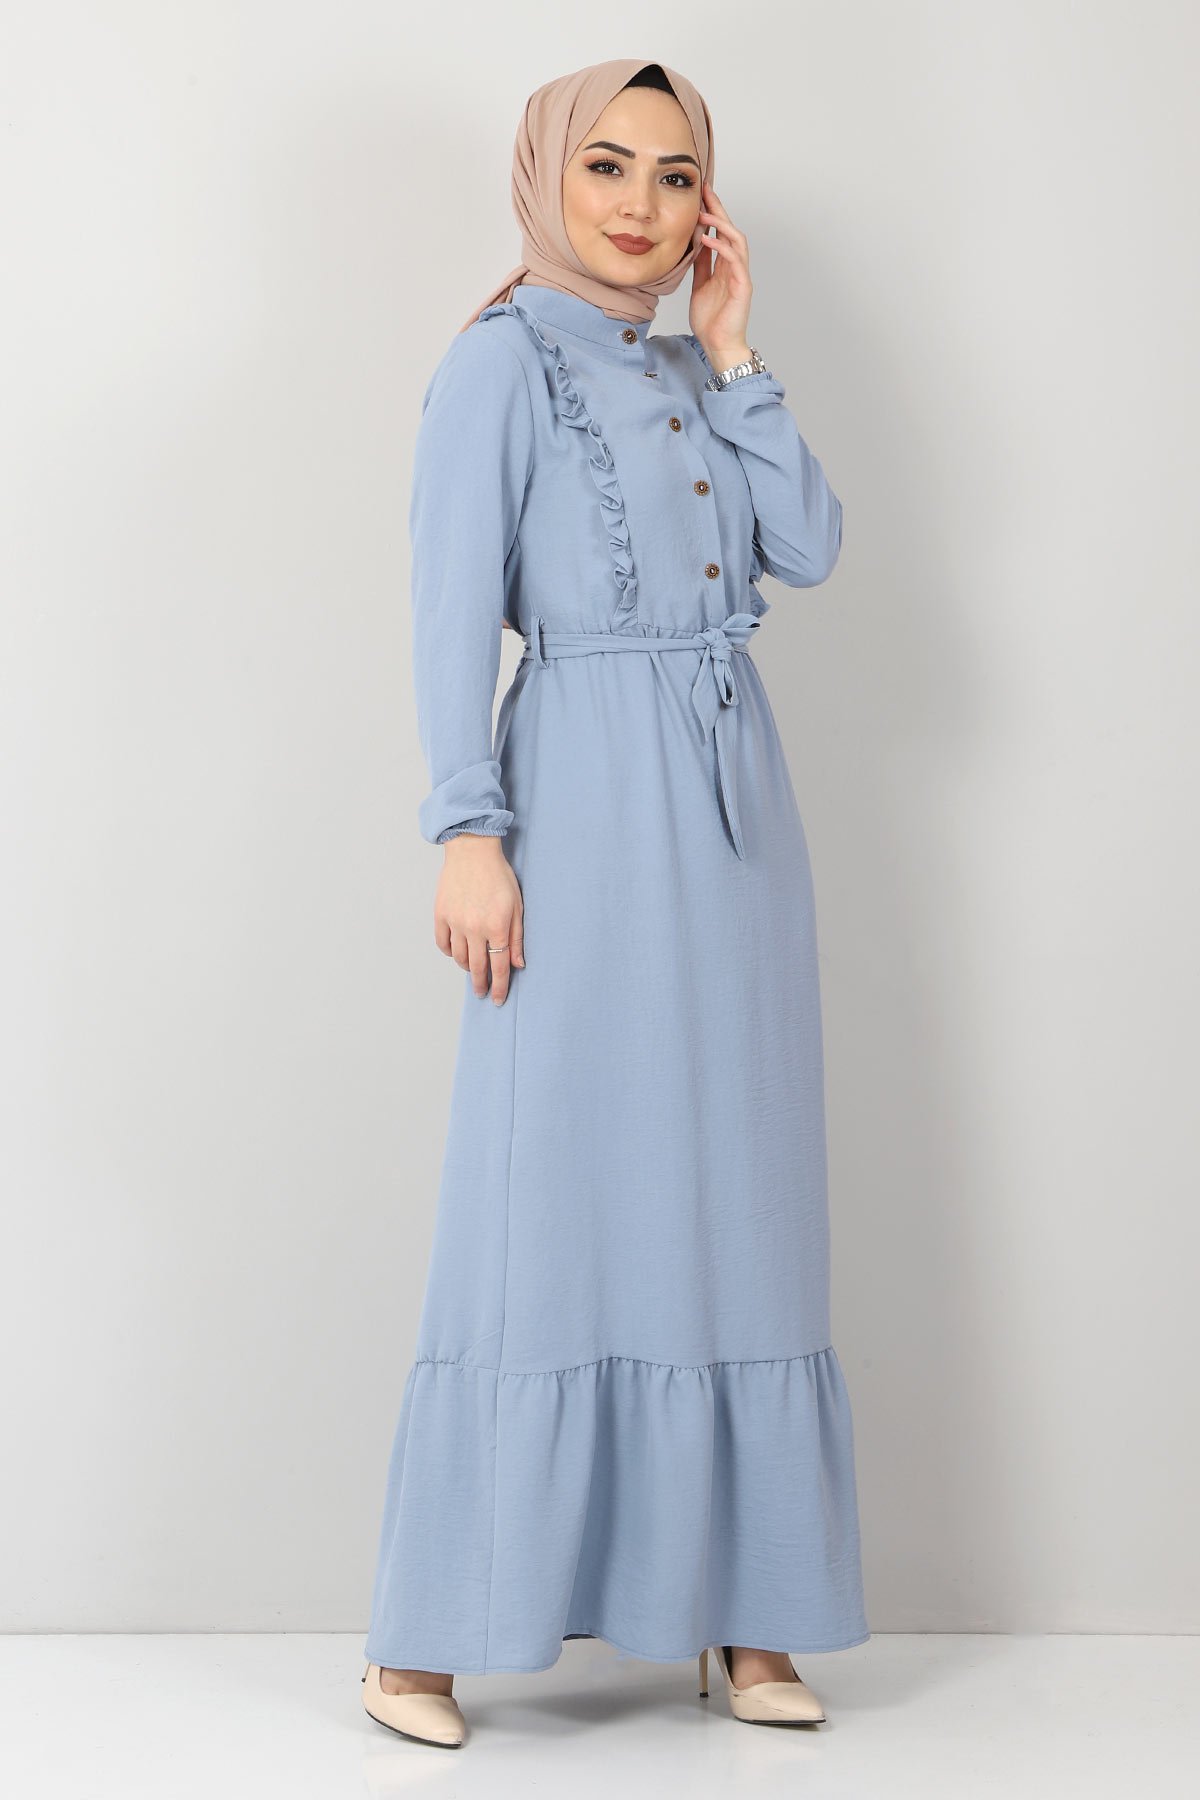 Önü Fırfırlı Ayrobin Elbise TSD11011 Mavi